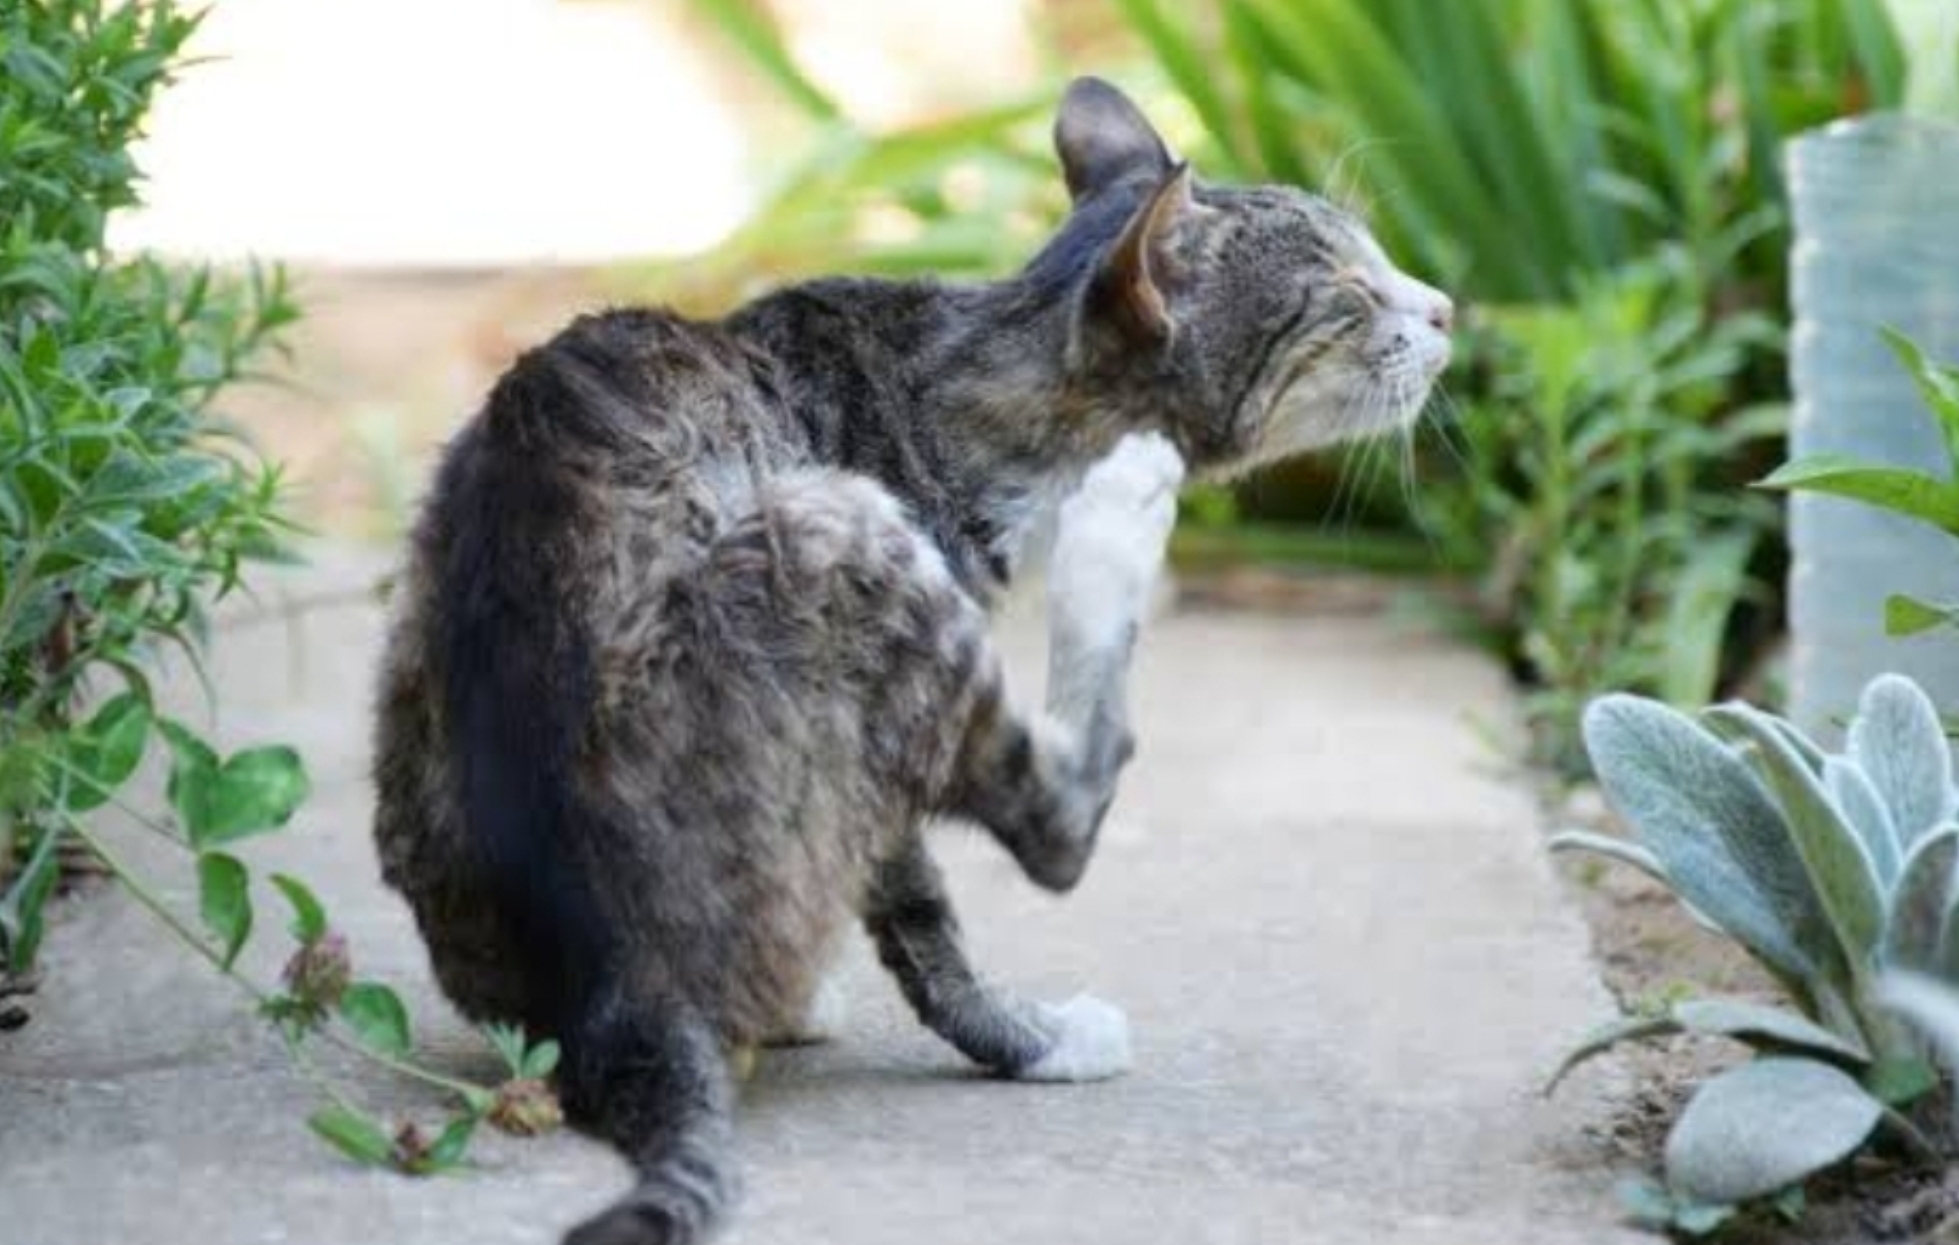 Yuk Kenali Penyakit Kulit pada Kucing: Gejala, Penyebab dan Cara Mengatasinya, Simak Penjelasannya